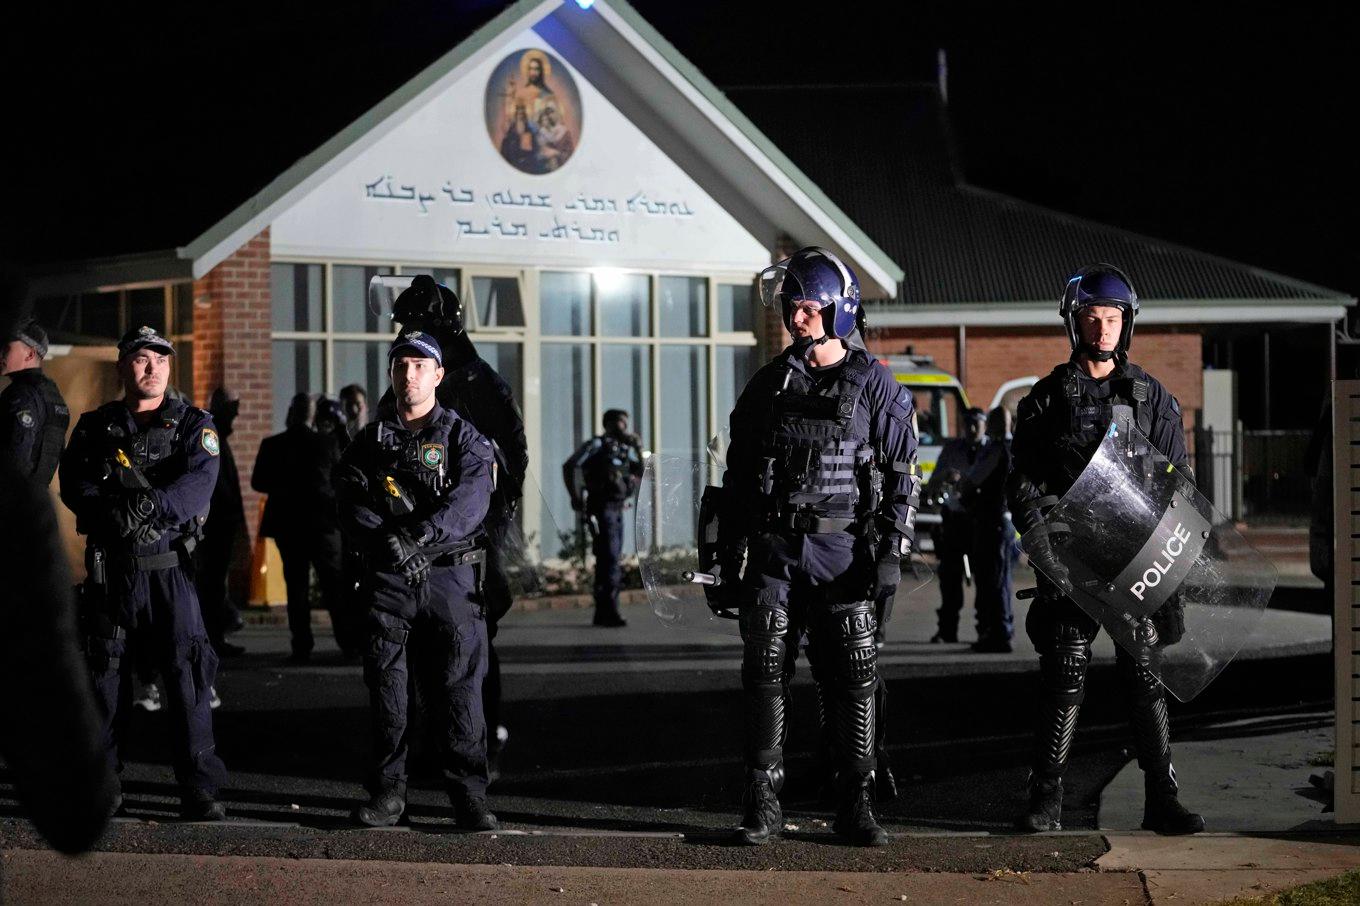 Polis utanför den assyriska kyrkan där attacken skedde. Foto: Mark Baker/AP/TT